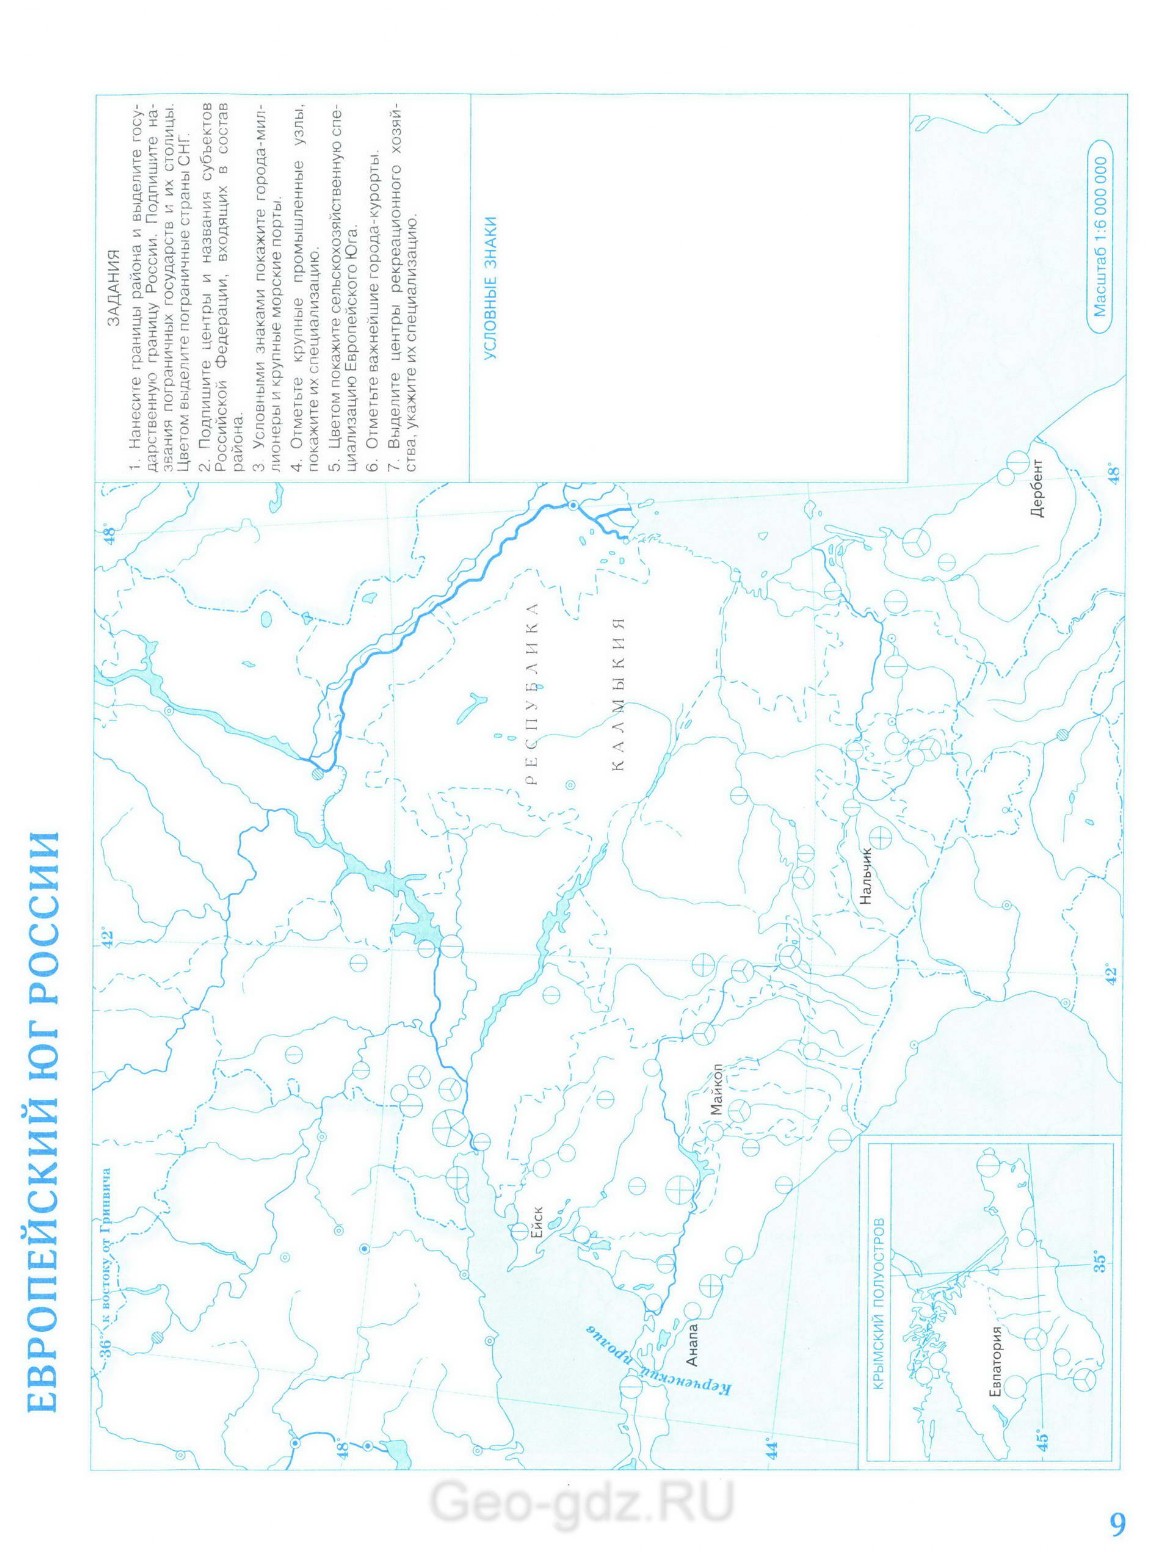 Контурная карта Европейский Юг России - география 9 класс Дрофа, скачать ираспечатать бесплатно - Решебник